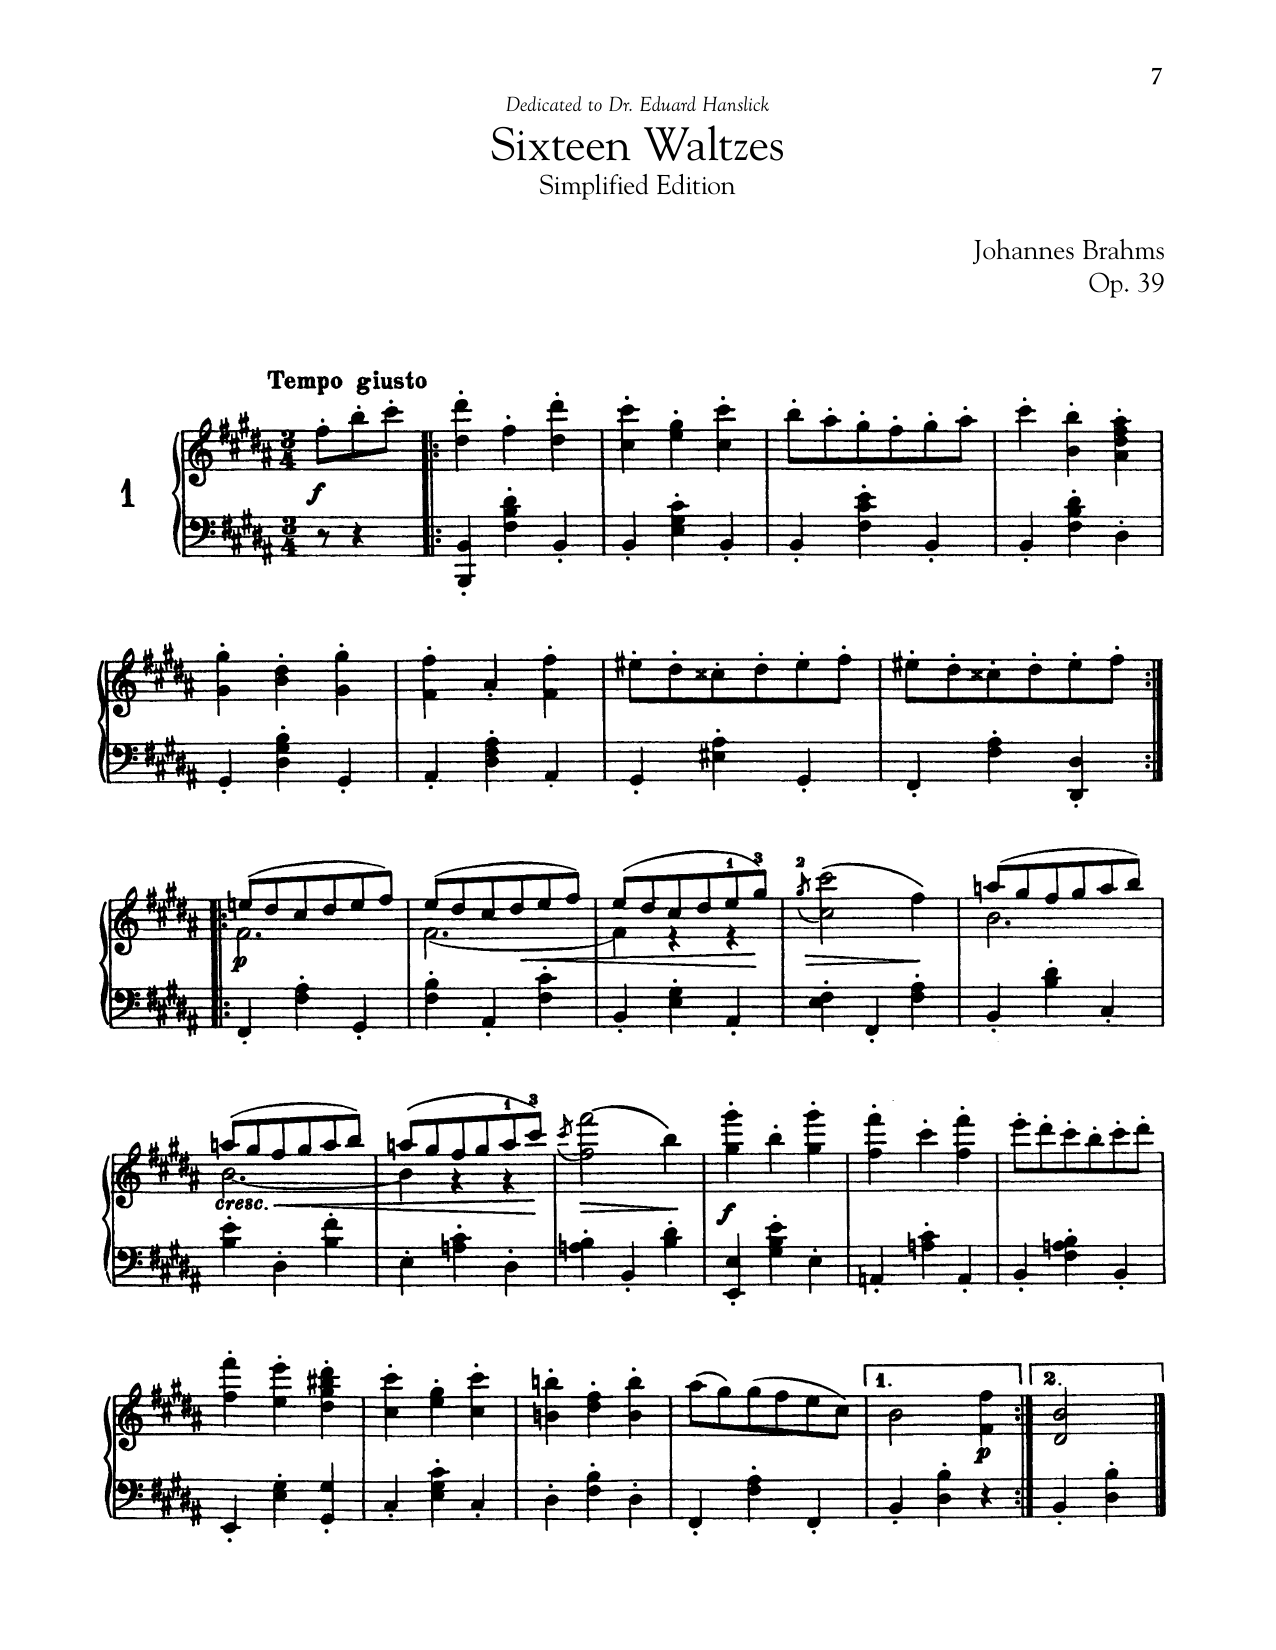 Download Johannes Brahms 16 Waltzes, Op. 39 (Simplified Edition) Sheet Music